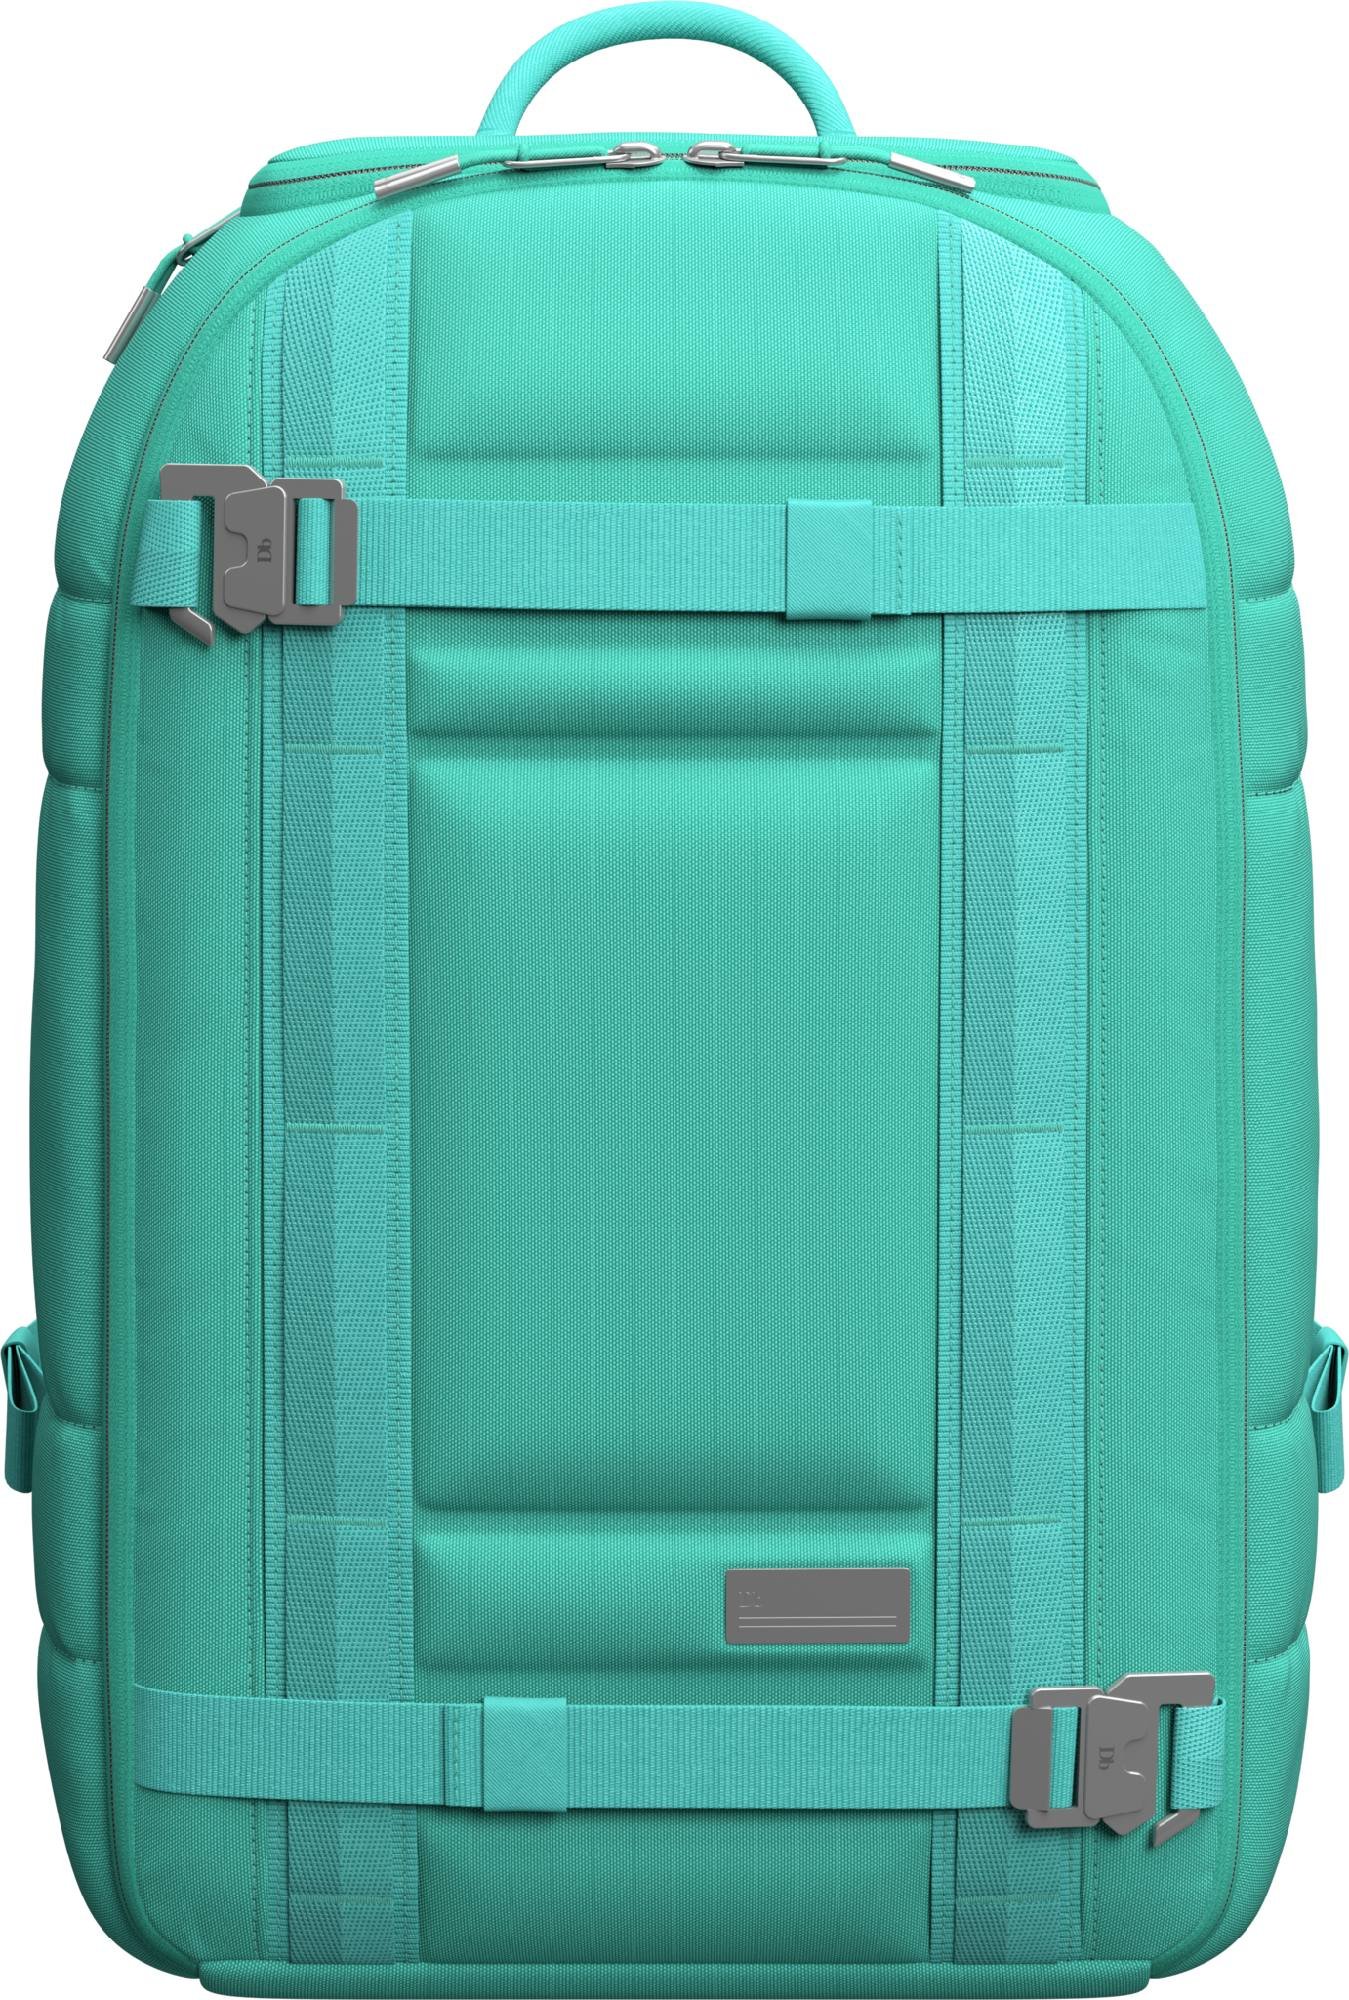 Db The Ramverk 21L Backpack | Ryggsekk og bag